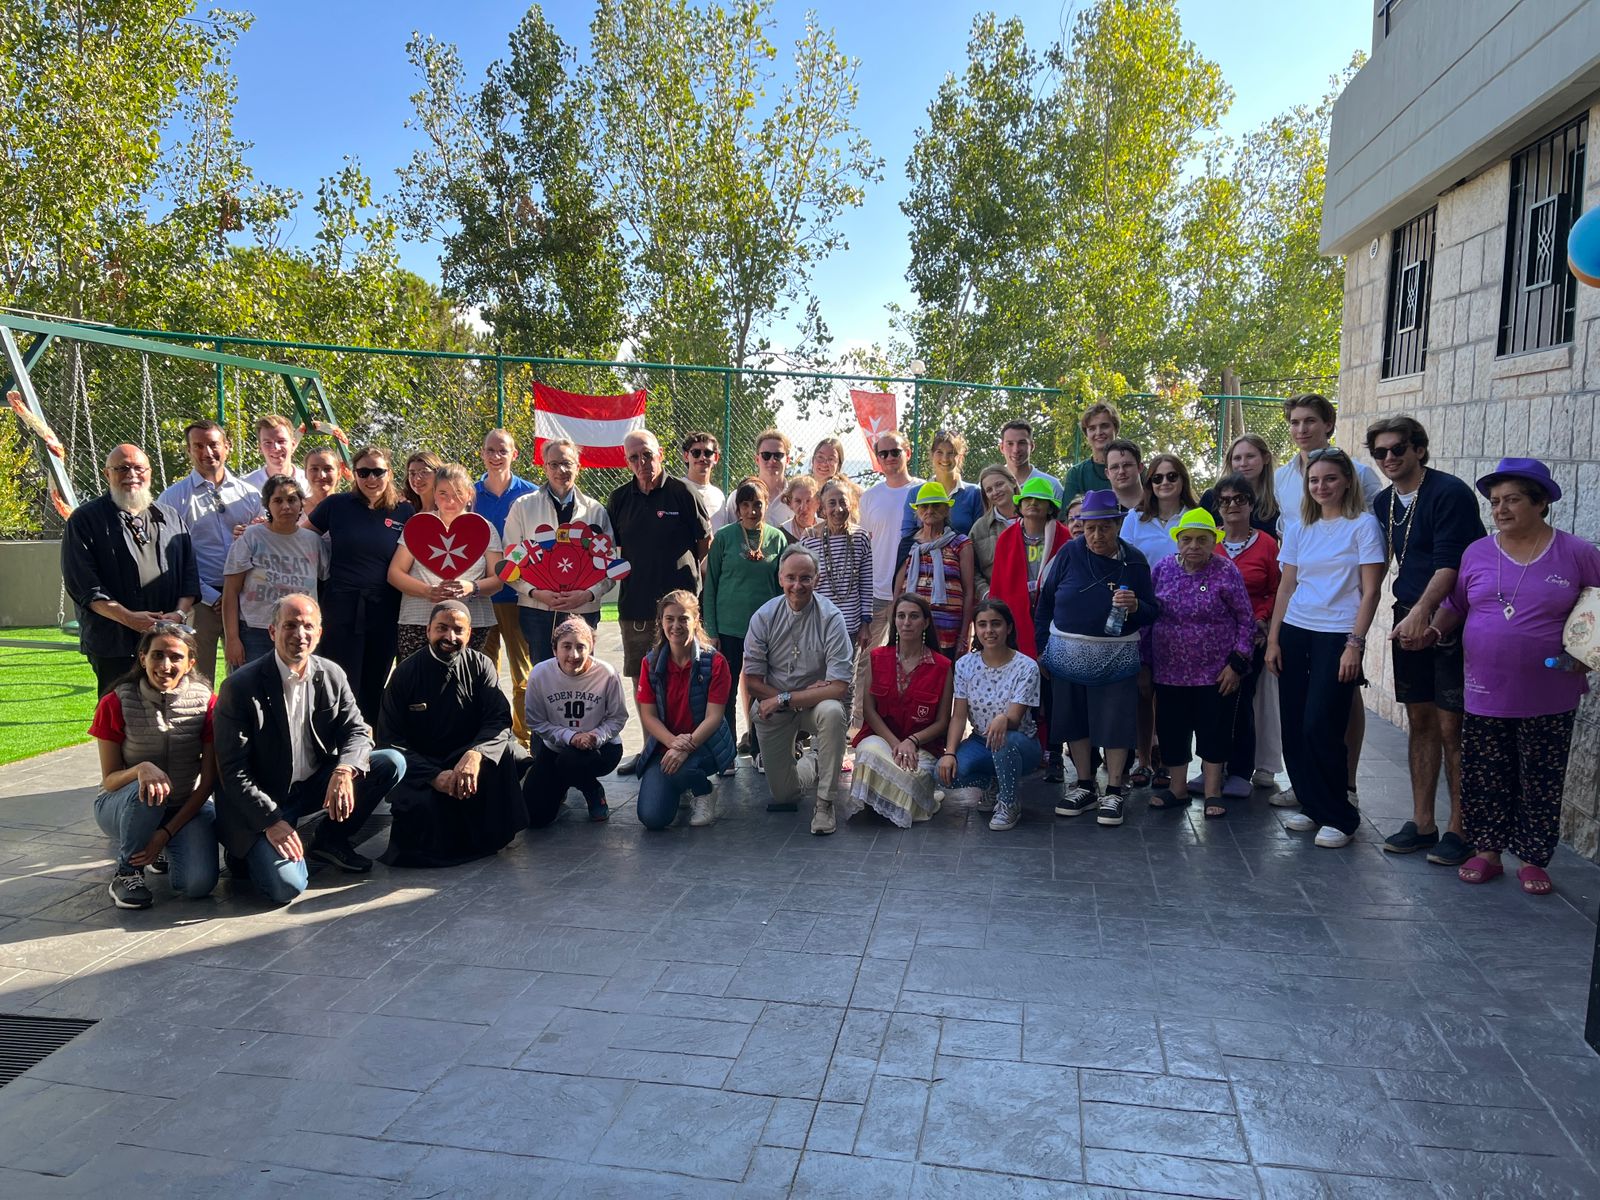 Der Großhospitalier besucht im Libanon einige der landesweit wichtigsten Projekte des Malteserordens